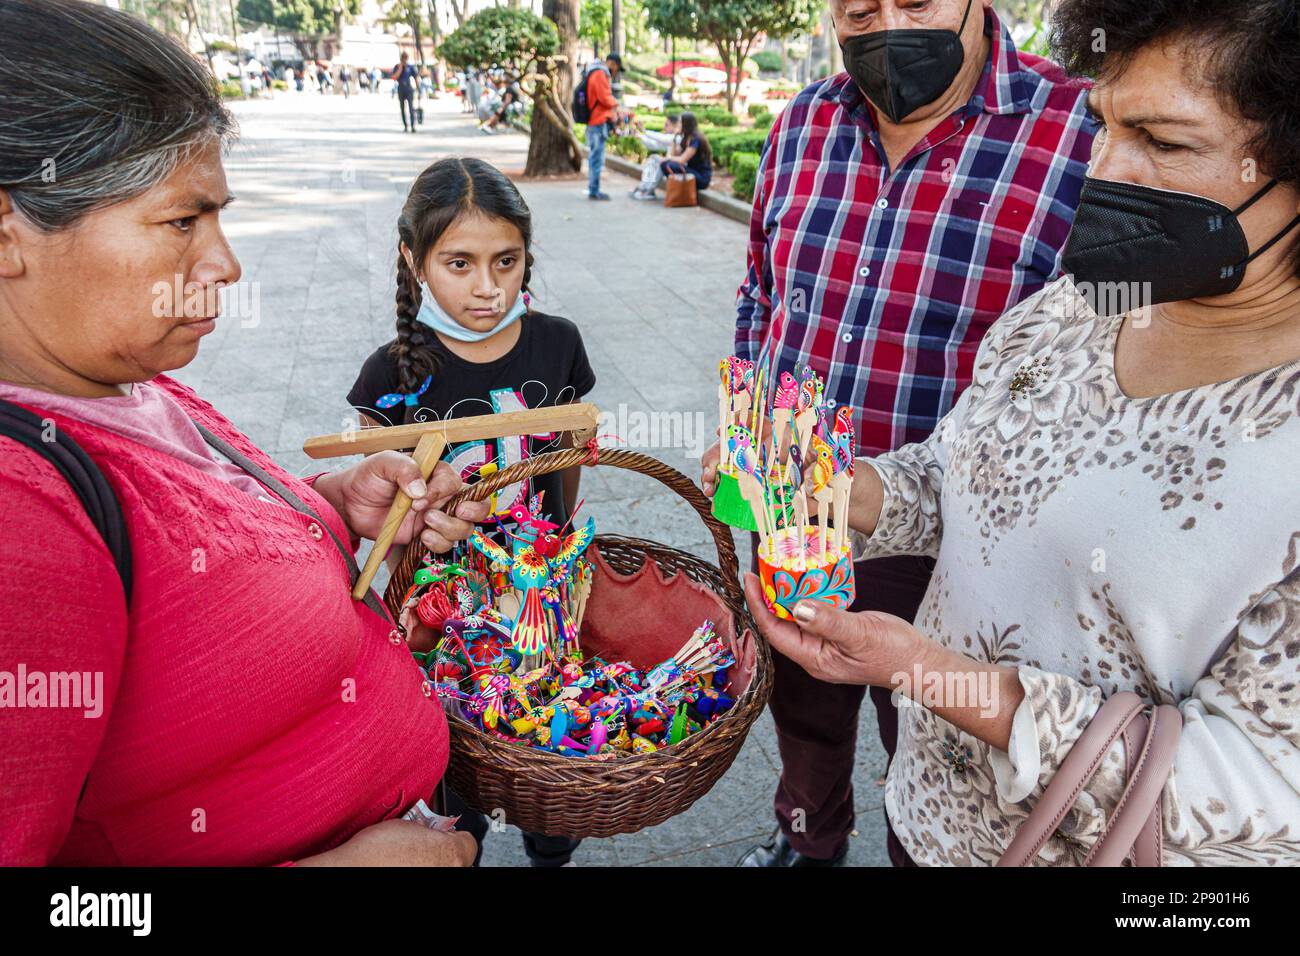 Città del Messico, cestino regali souvenir souvenir, centro storico, alebrijes alebrije legno folk arte figurine, uomo uomini maschio, donna donna donna donna donna donna donna, adulto Foto Stock